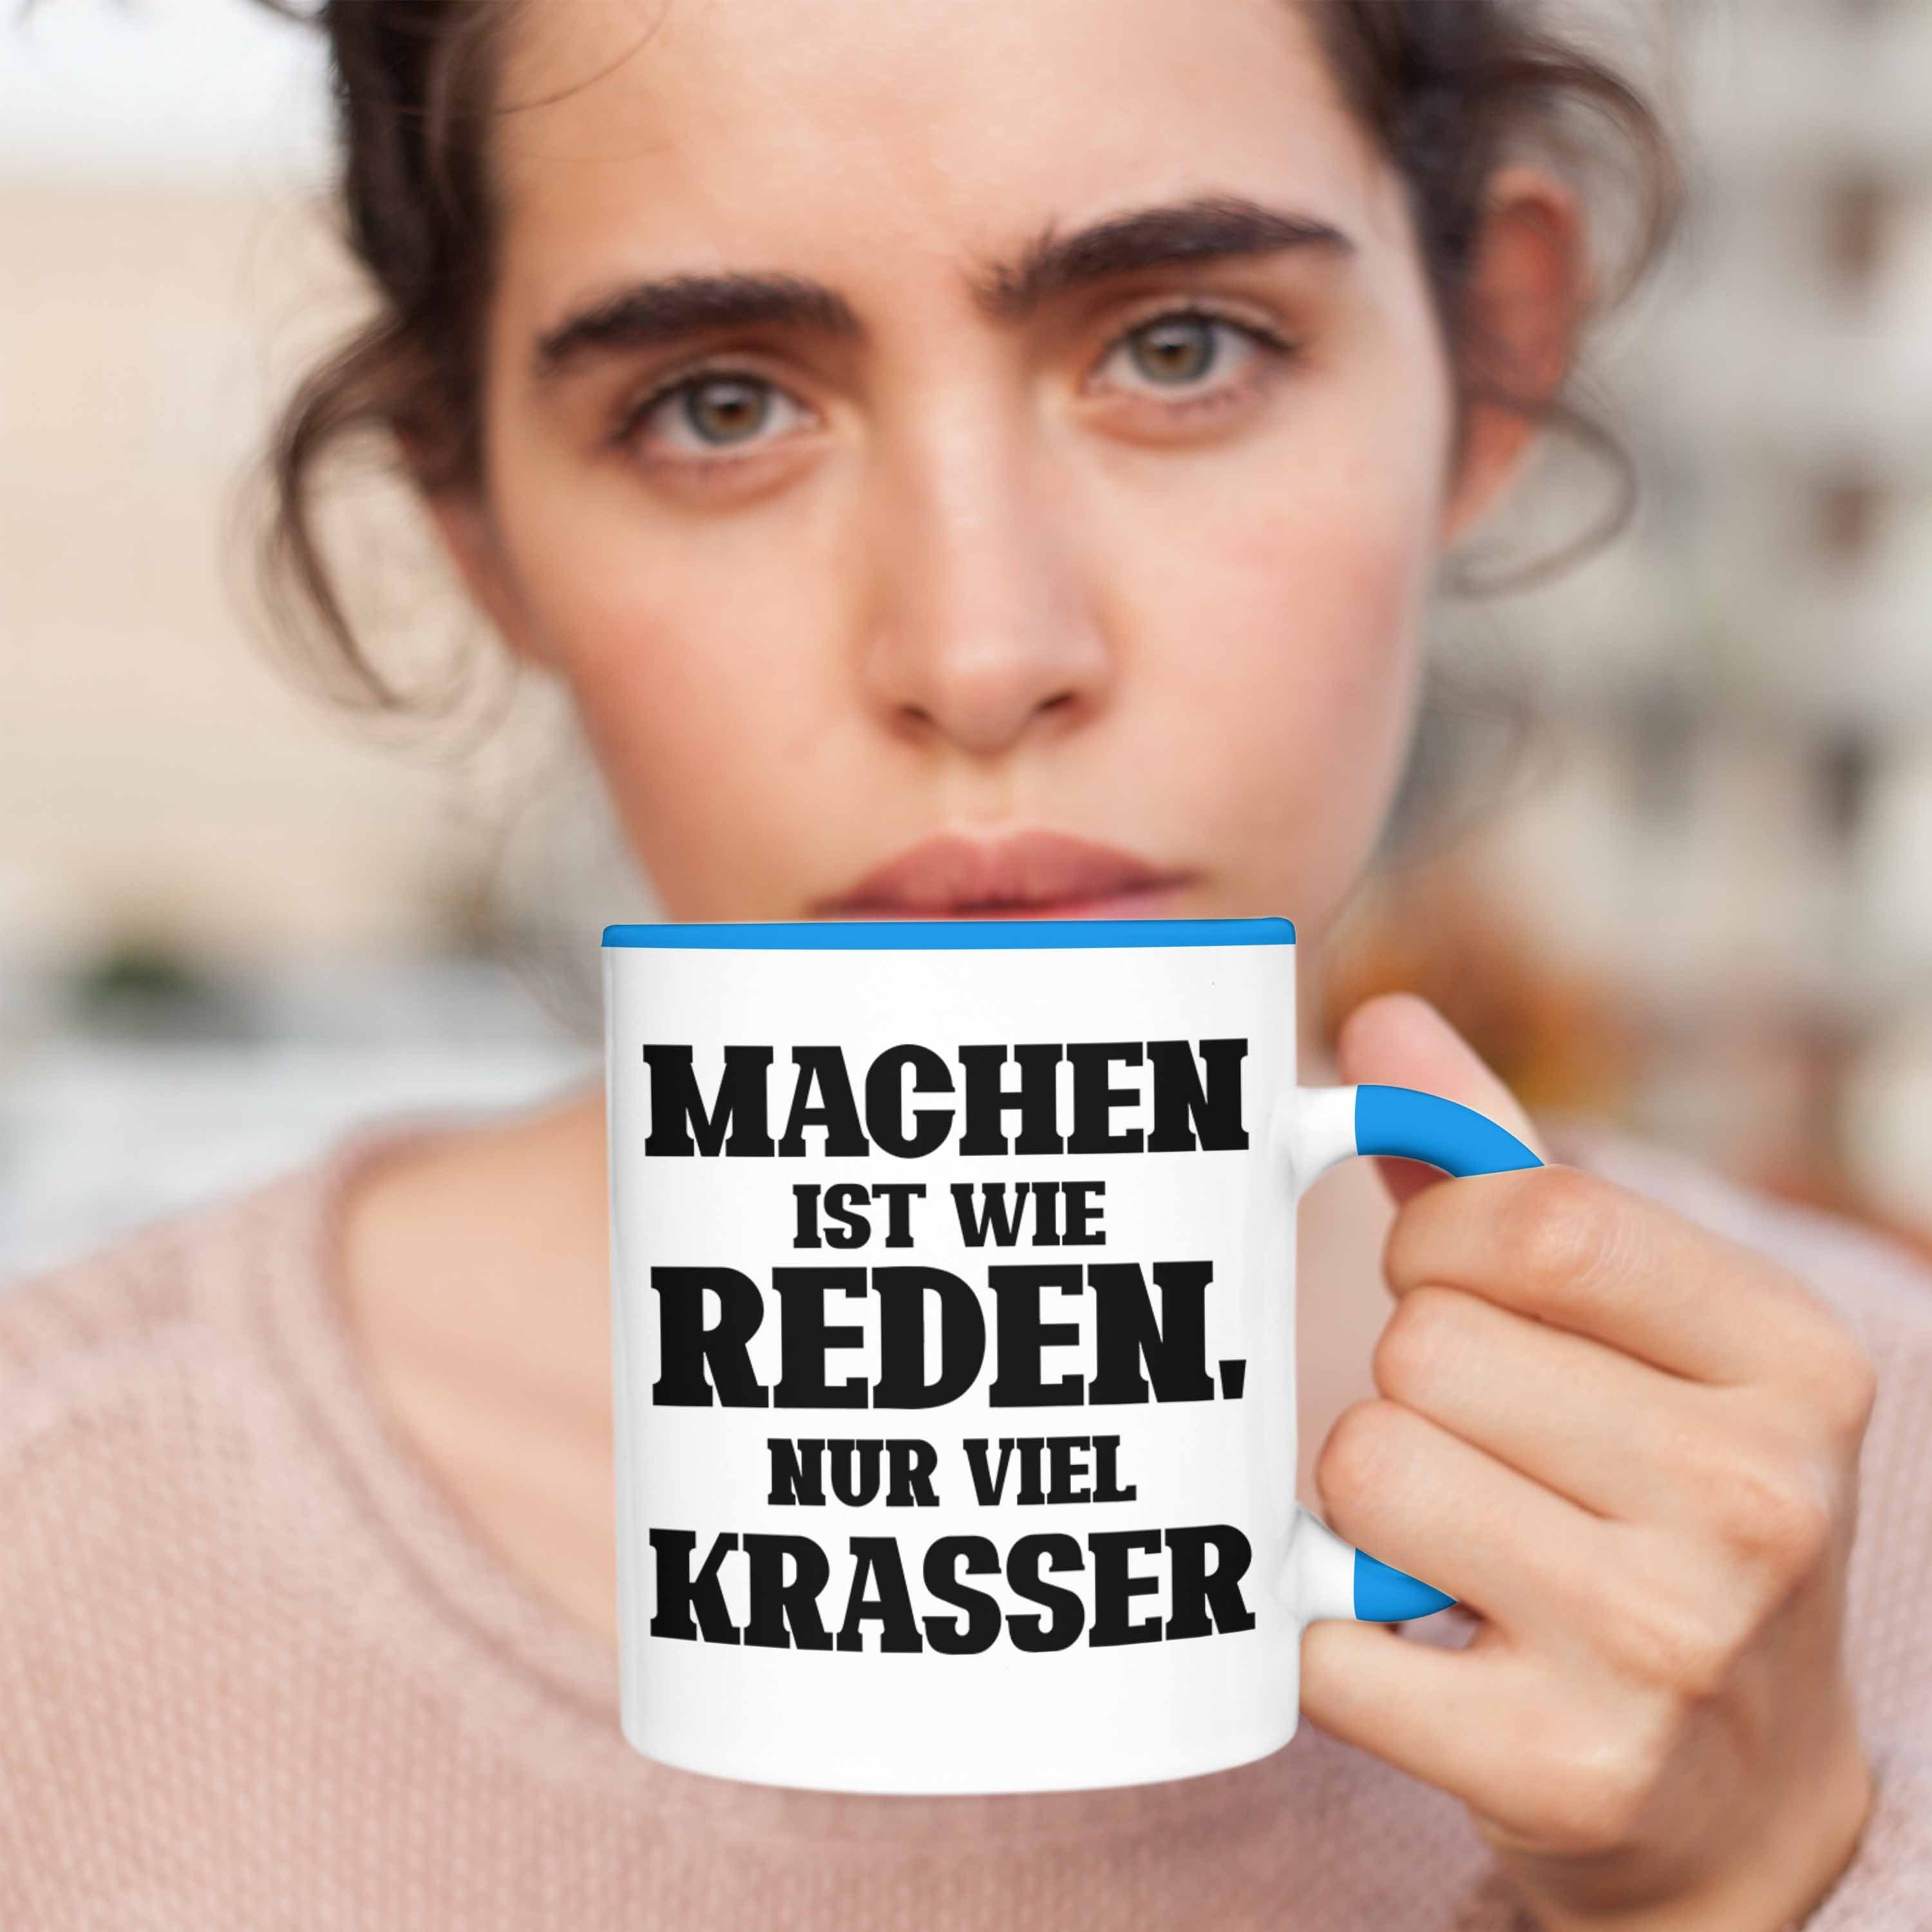 Krasser" Ist Lustige Reden Trendation Blau "Machen Geschenk Viel für Tasse Wie Tasse Mac Nur